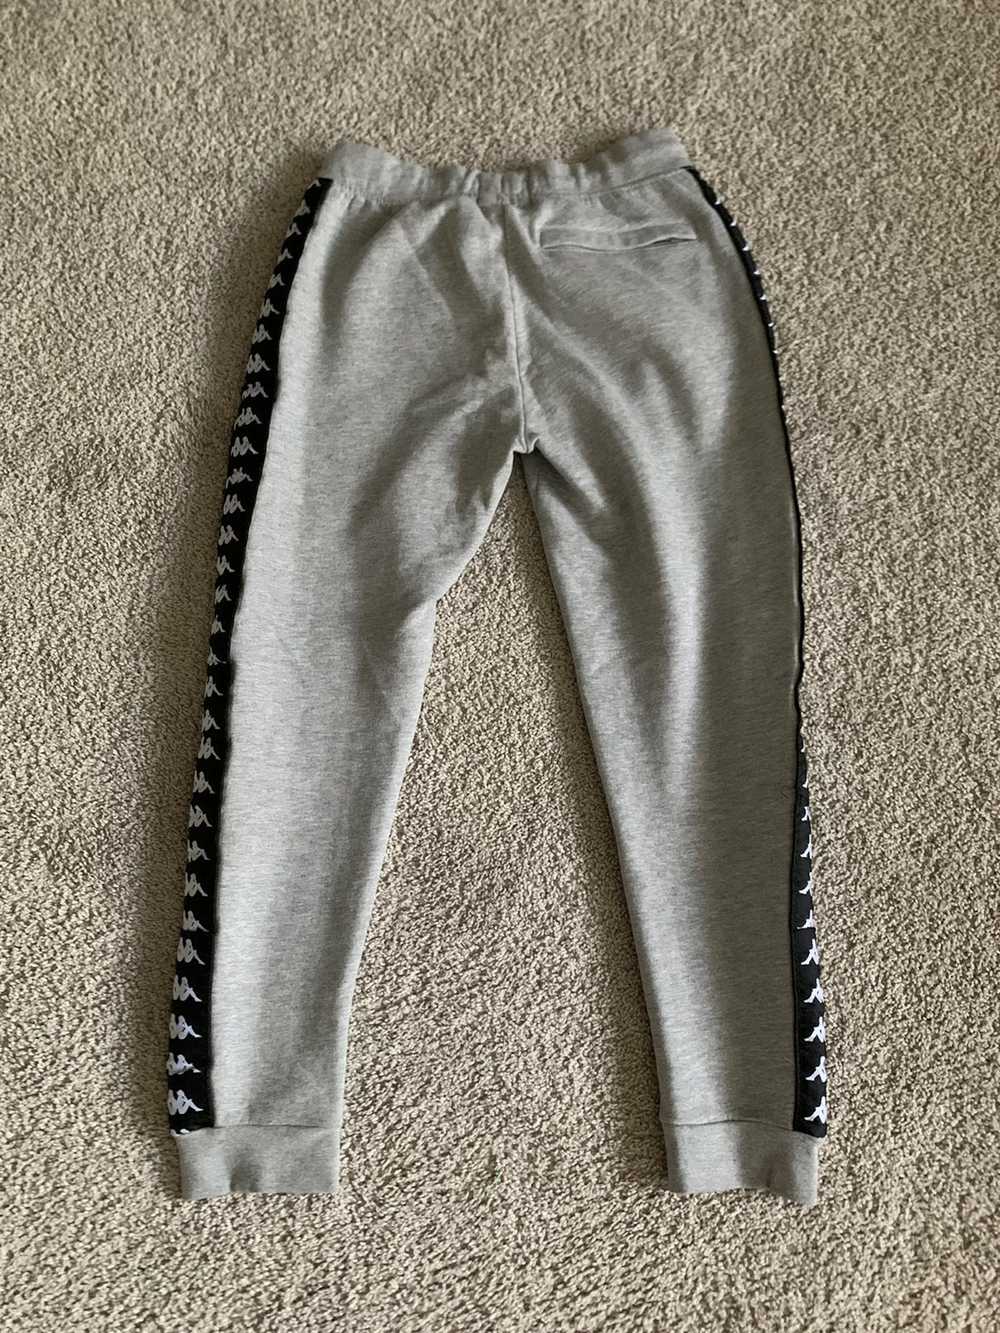 Kappa × Streetwear Kappa Sweatpants Size Large - image 2